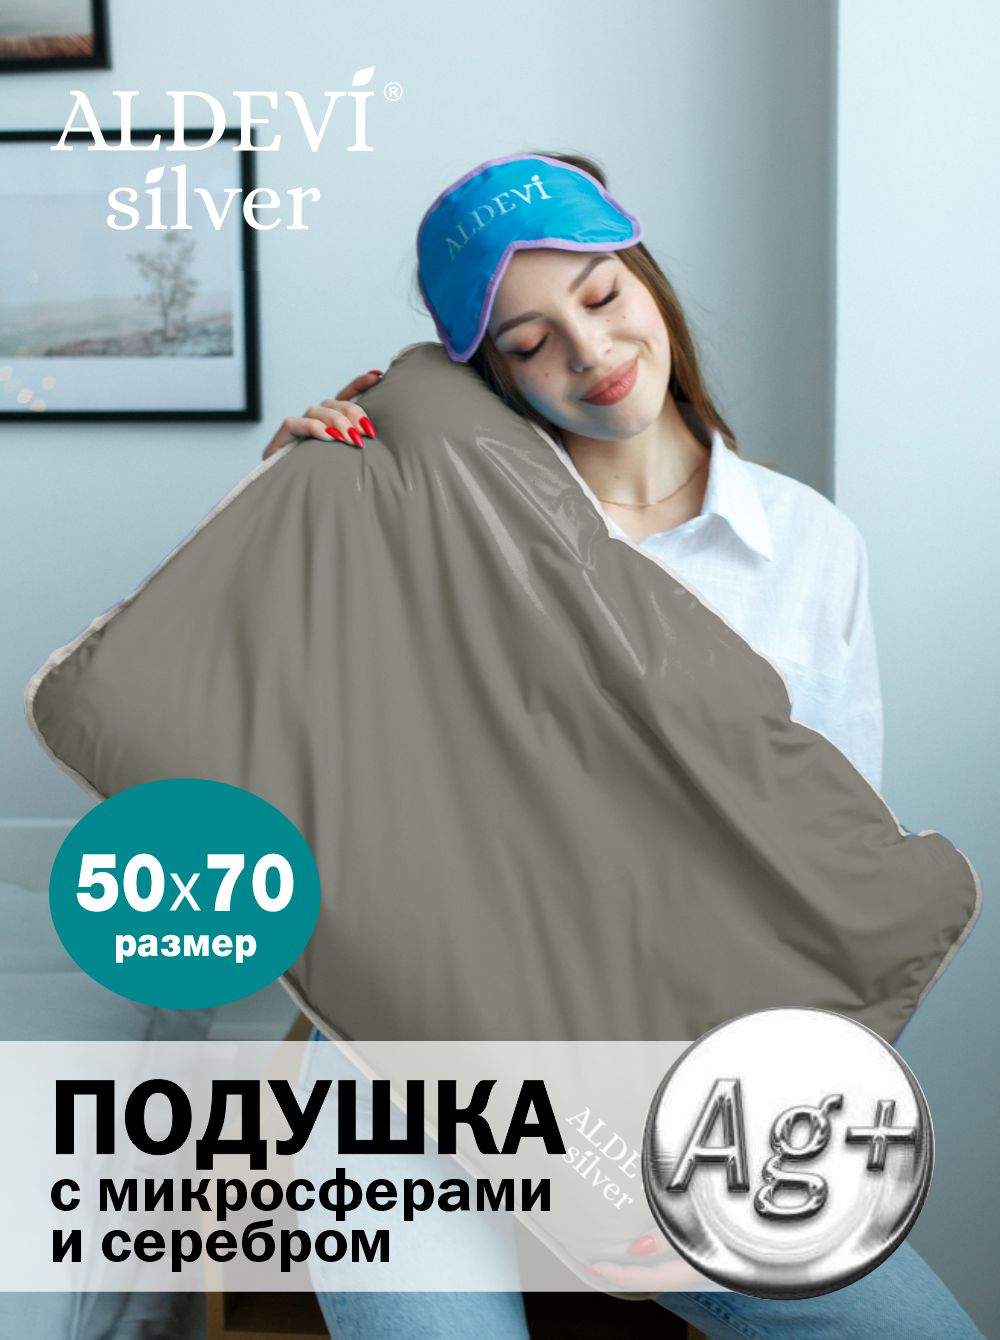 Подушка с микросферами и серебром ALDEVI-silver, 50х70 - купить в ALDEVI, цена на Мегамаркет